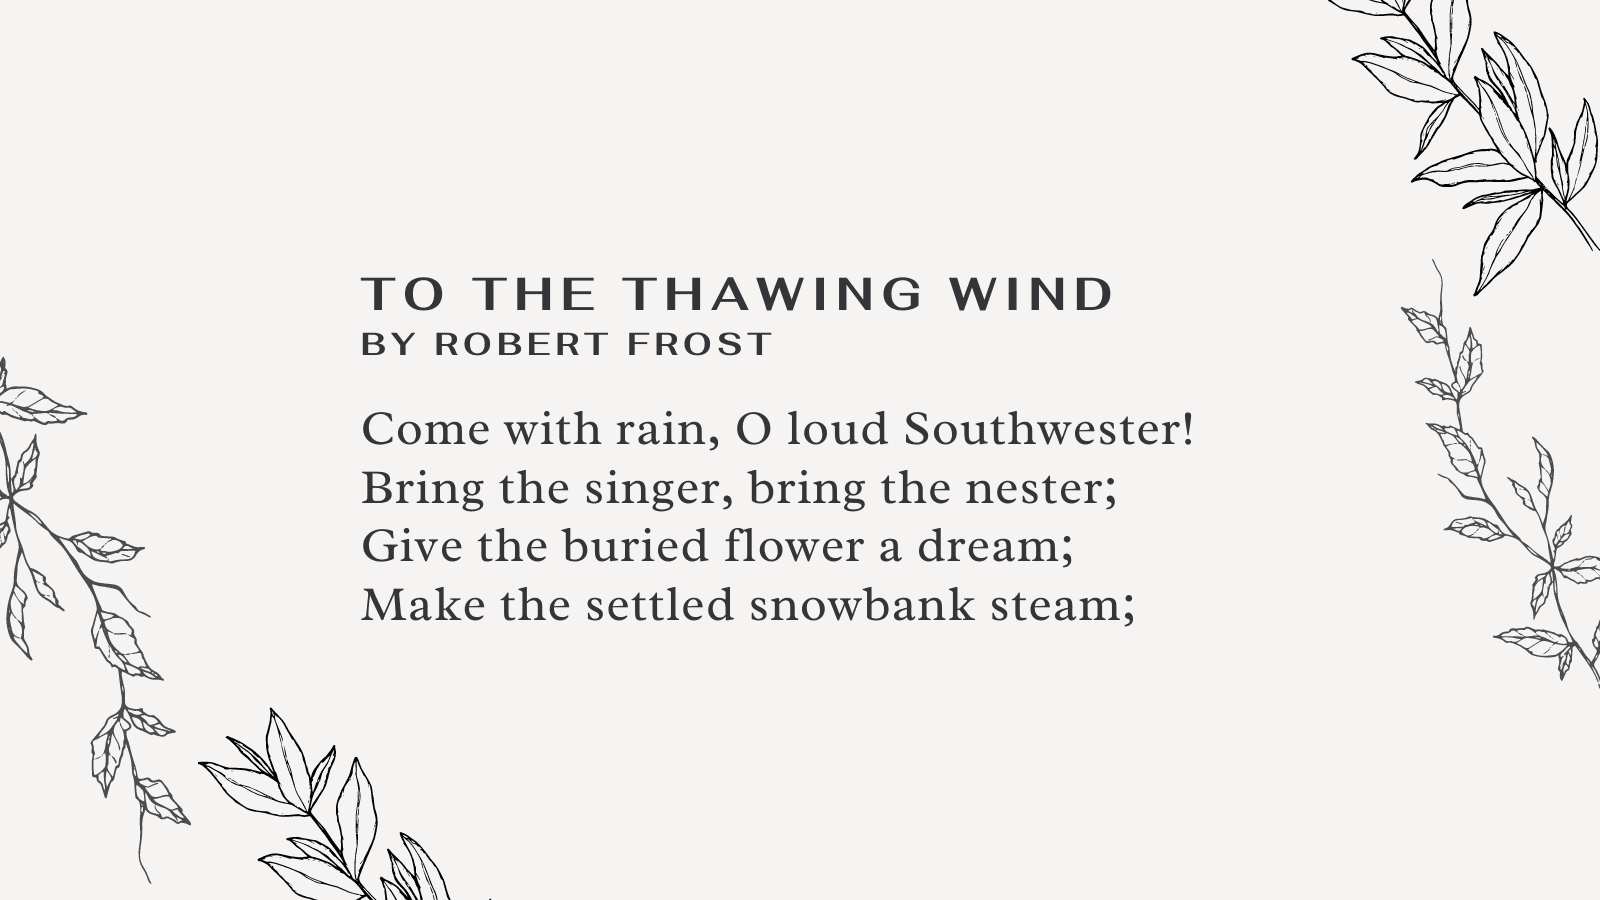 Read Rain on The Green Grass Poem for Kids - Popular Poems for Children